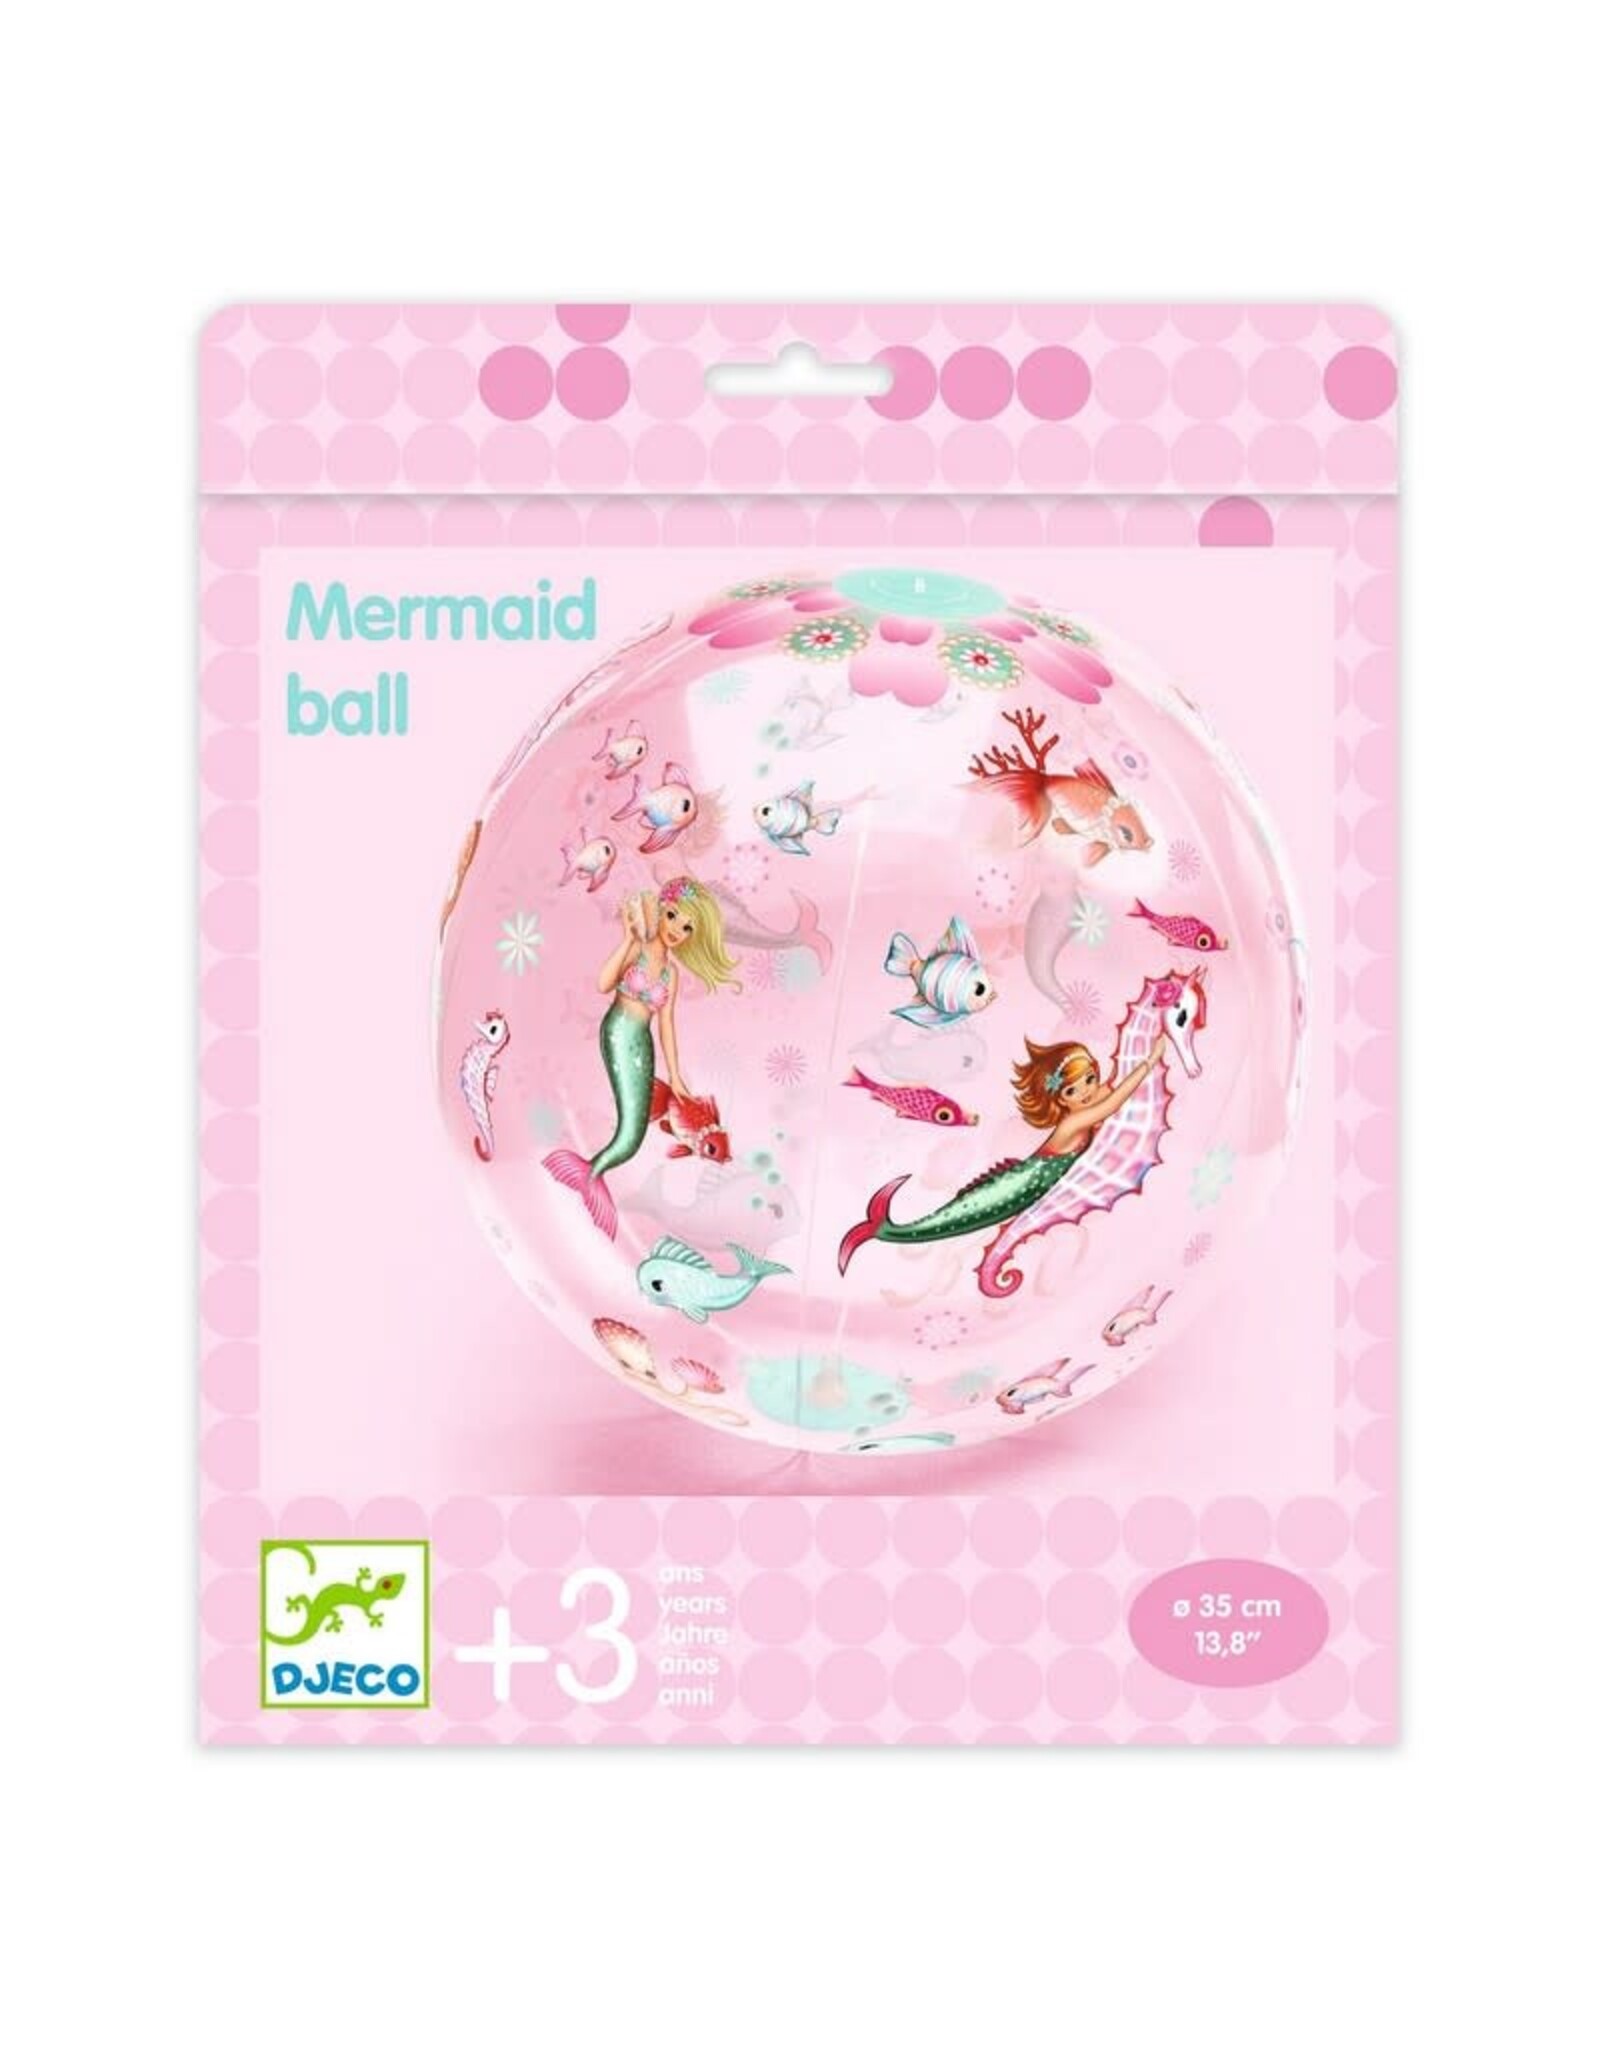 Djeco Mermaids Beach Ball